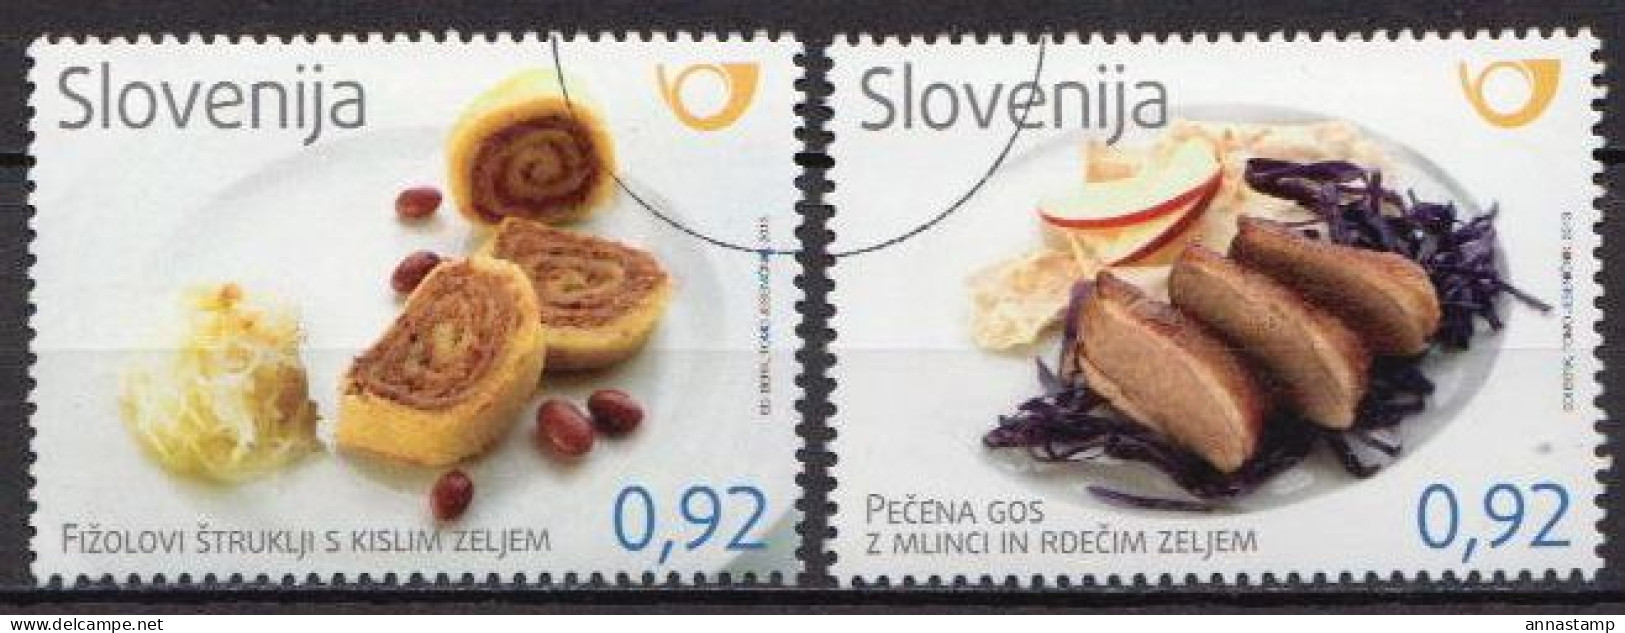 Slovenia MNH Stamps, Specimen - Food